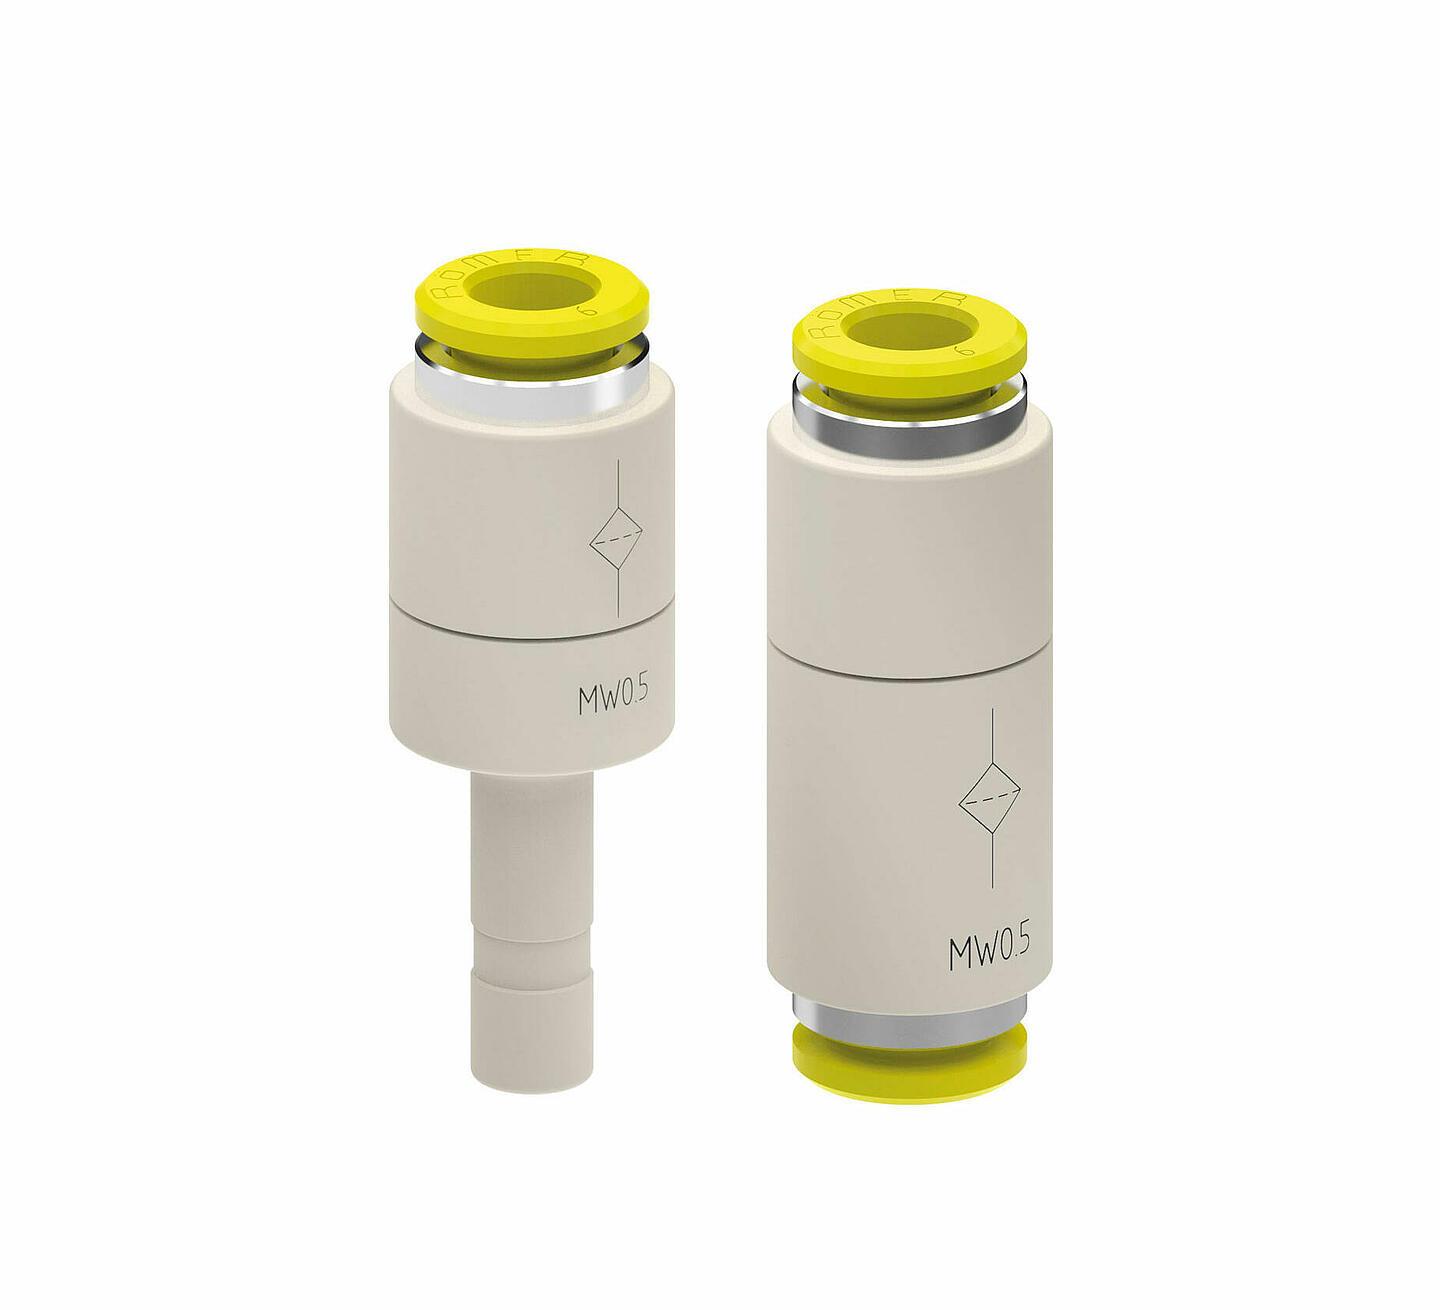 Der AVS Römer Filter ist ein gerader Steck-Anschluss bzw. Verbinder mit Filter, der Ihr System vor unerwünschten Verschmutzungen oder Fremdkörpern schützt.